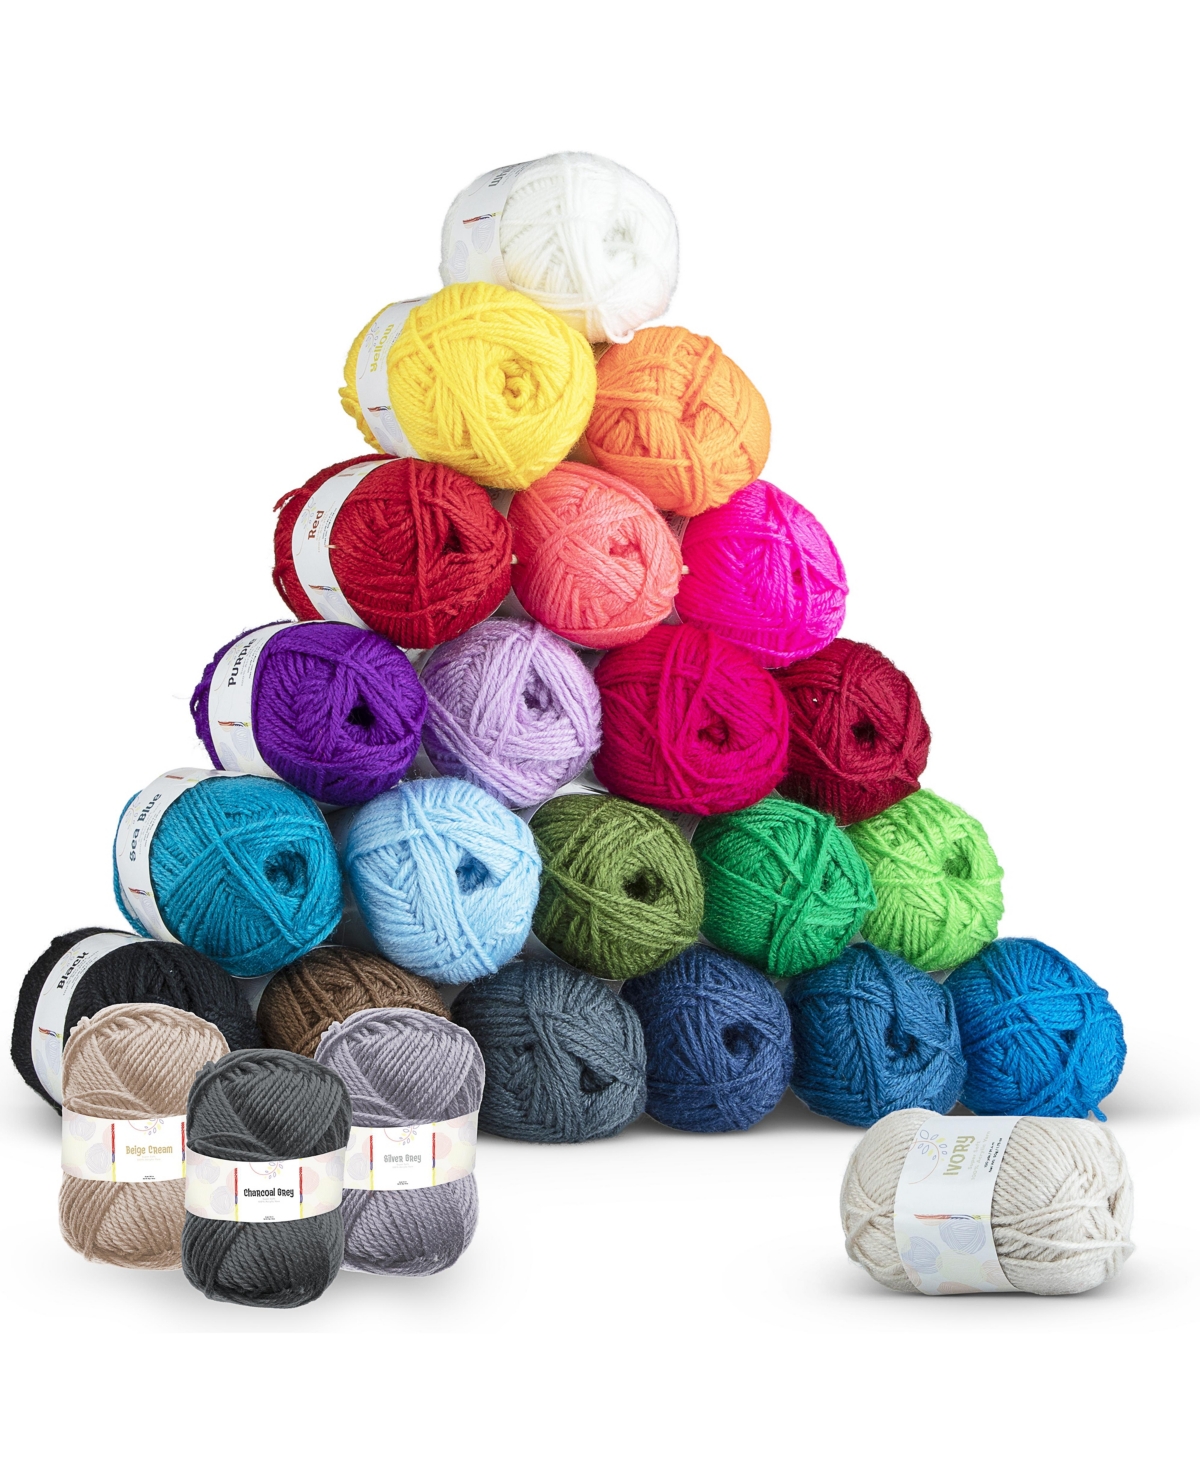 24 Pack of Crochet Yarn Skeins - Assorted Pre-pack